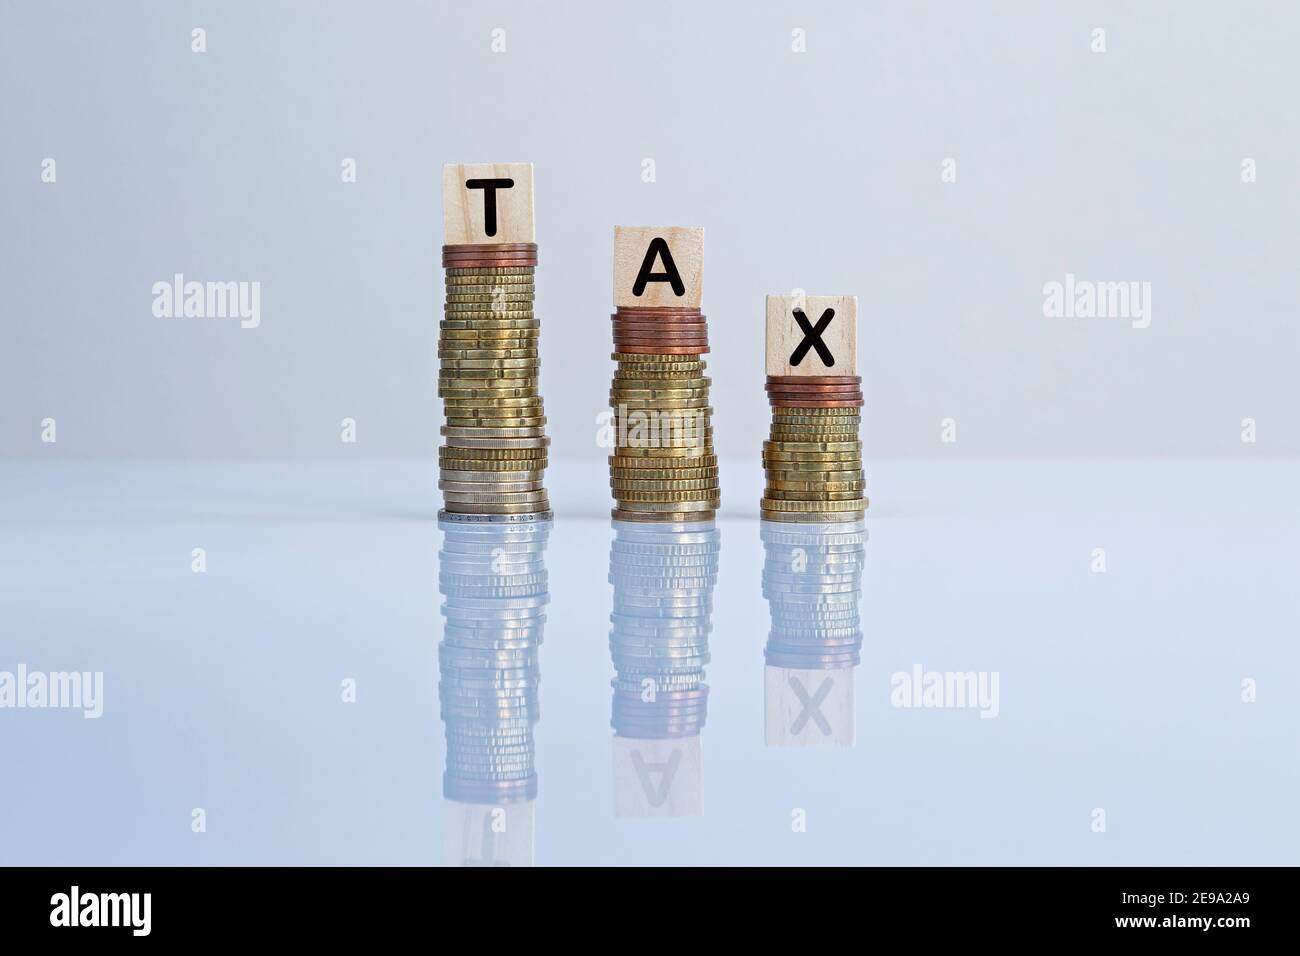 Wort "STEUER" auf Holzblöcke auf absteigenden Münzstapeln vor grauem Hintergrund. Konzept Foto von Steuersenkungen, Wirtschaft, Unternehmen und Finanzen. Stockfoto